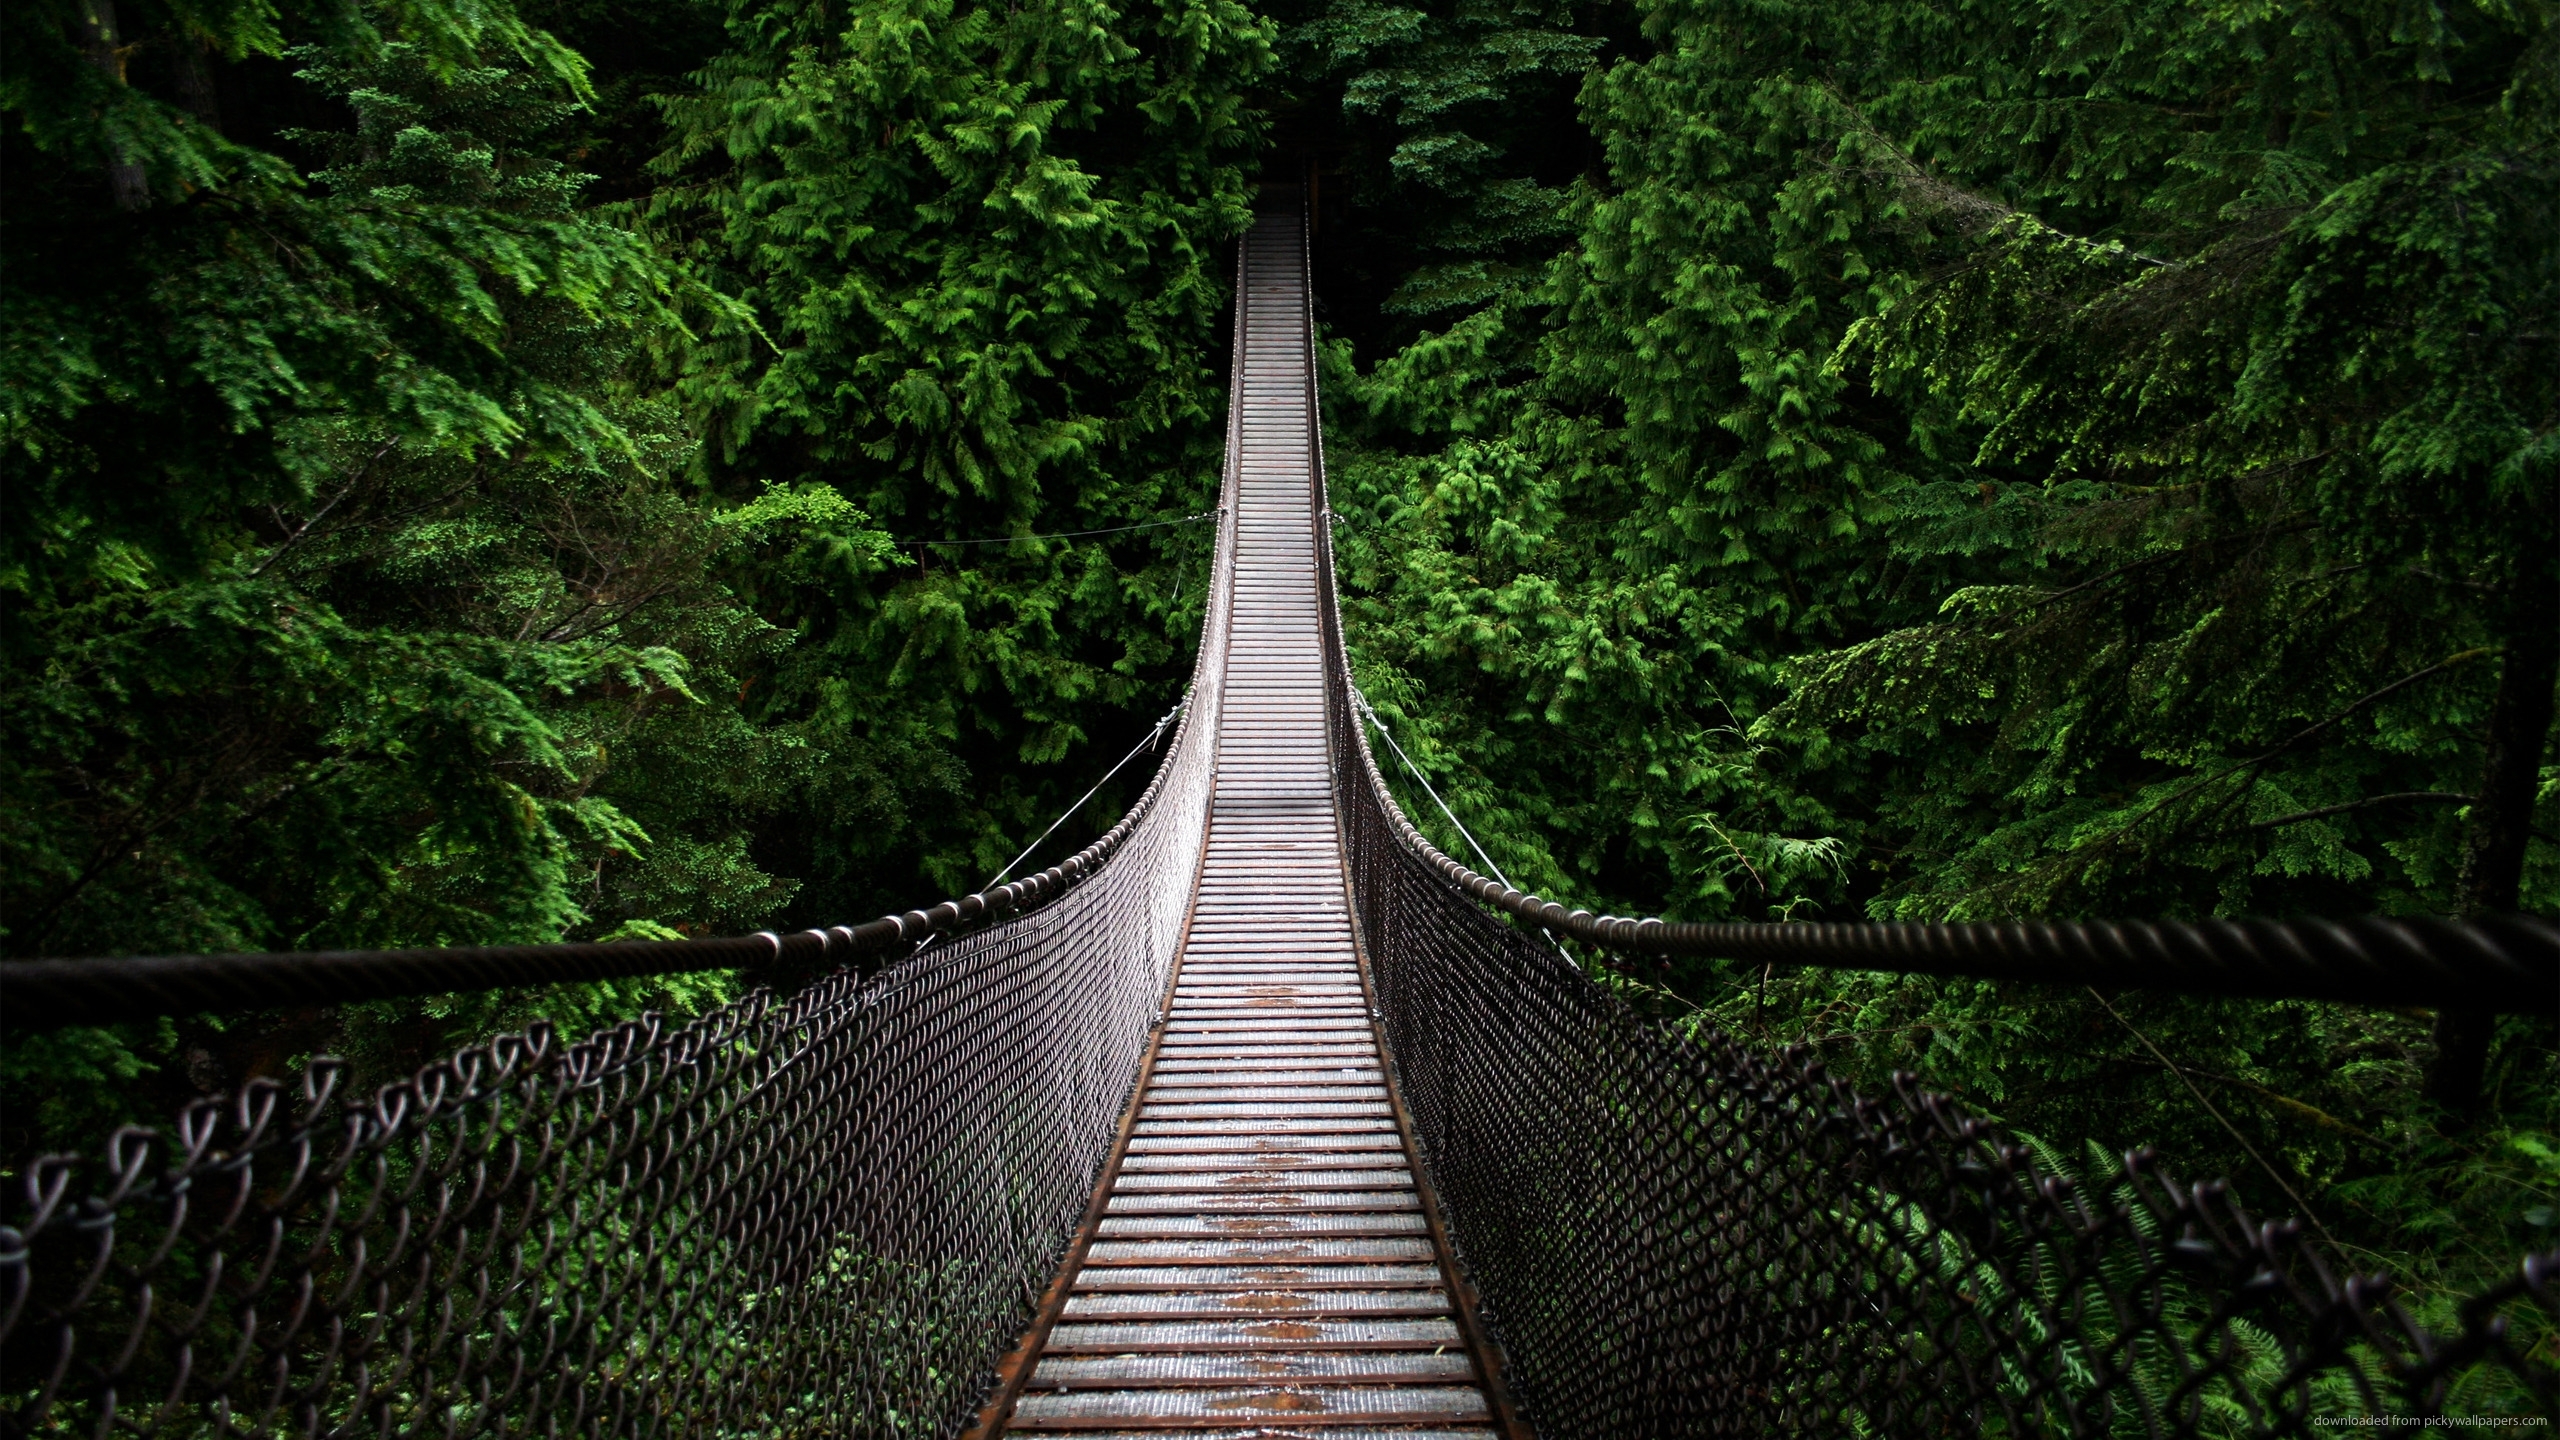 Download 2560x1440 Bridge Into The Woods Wallpaper